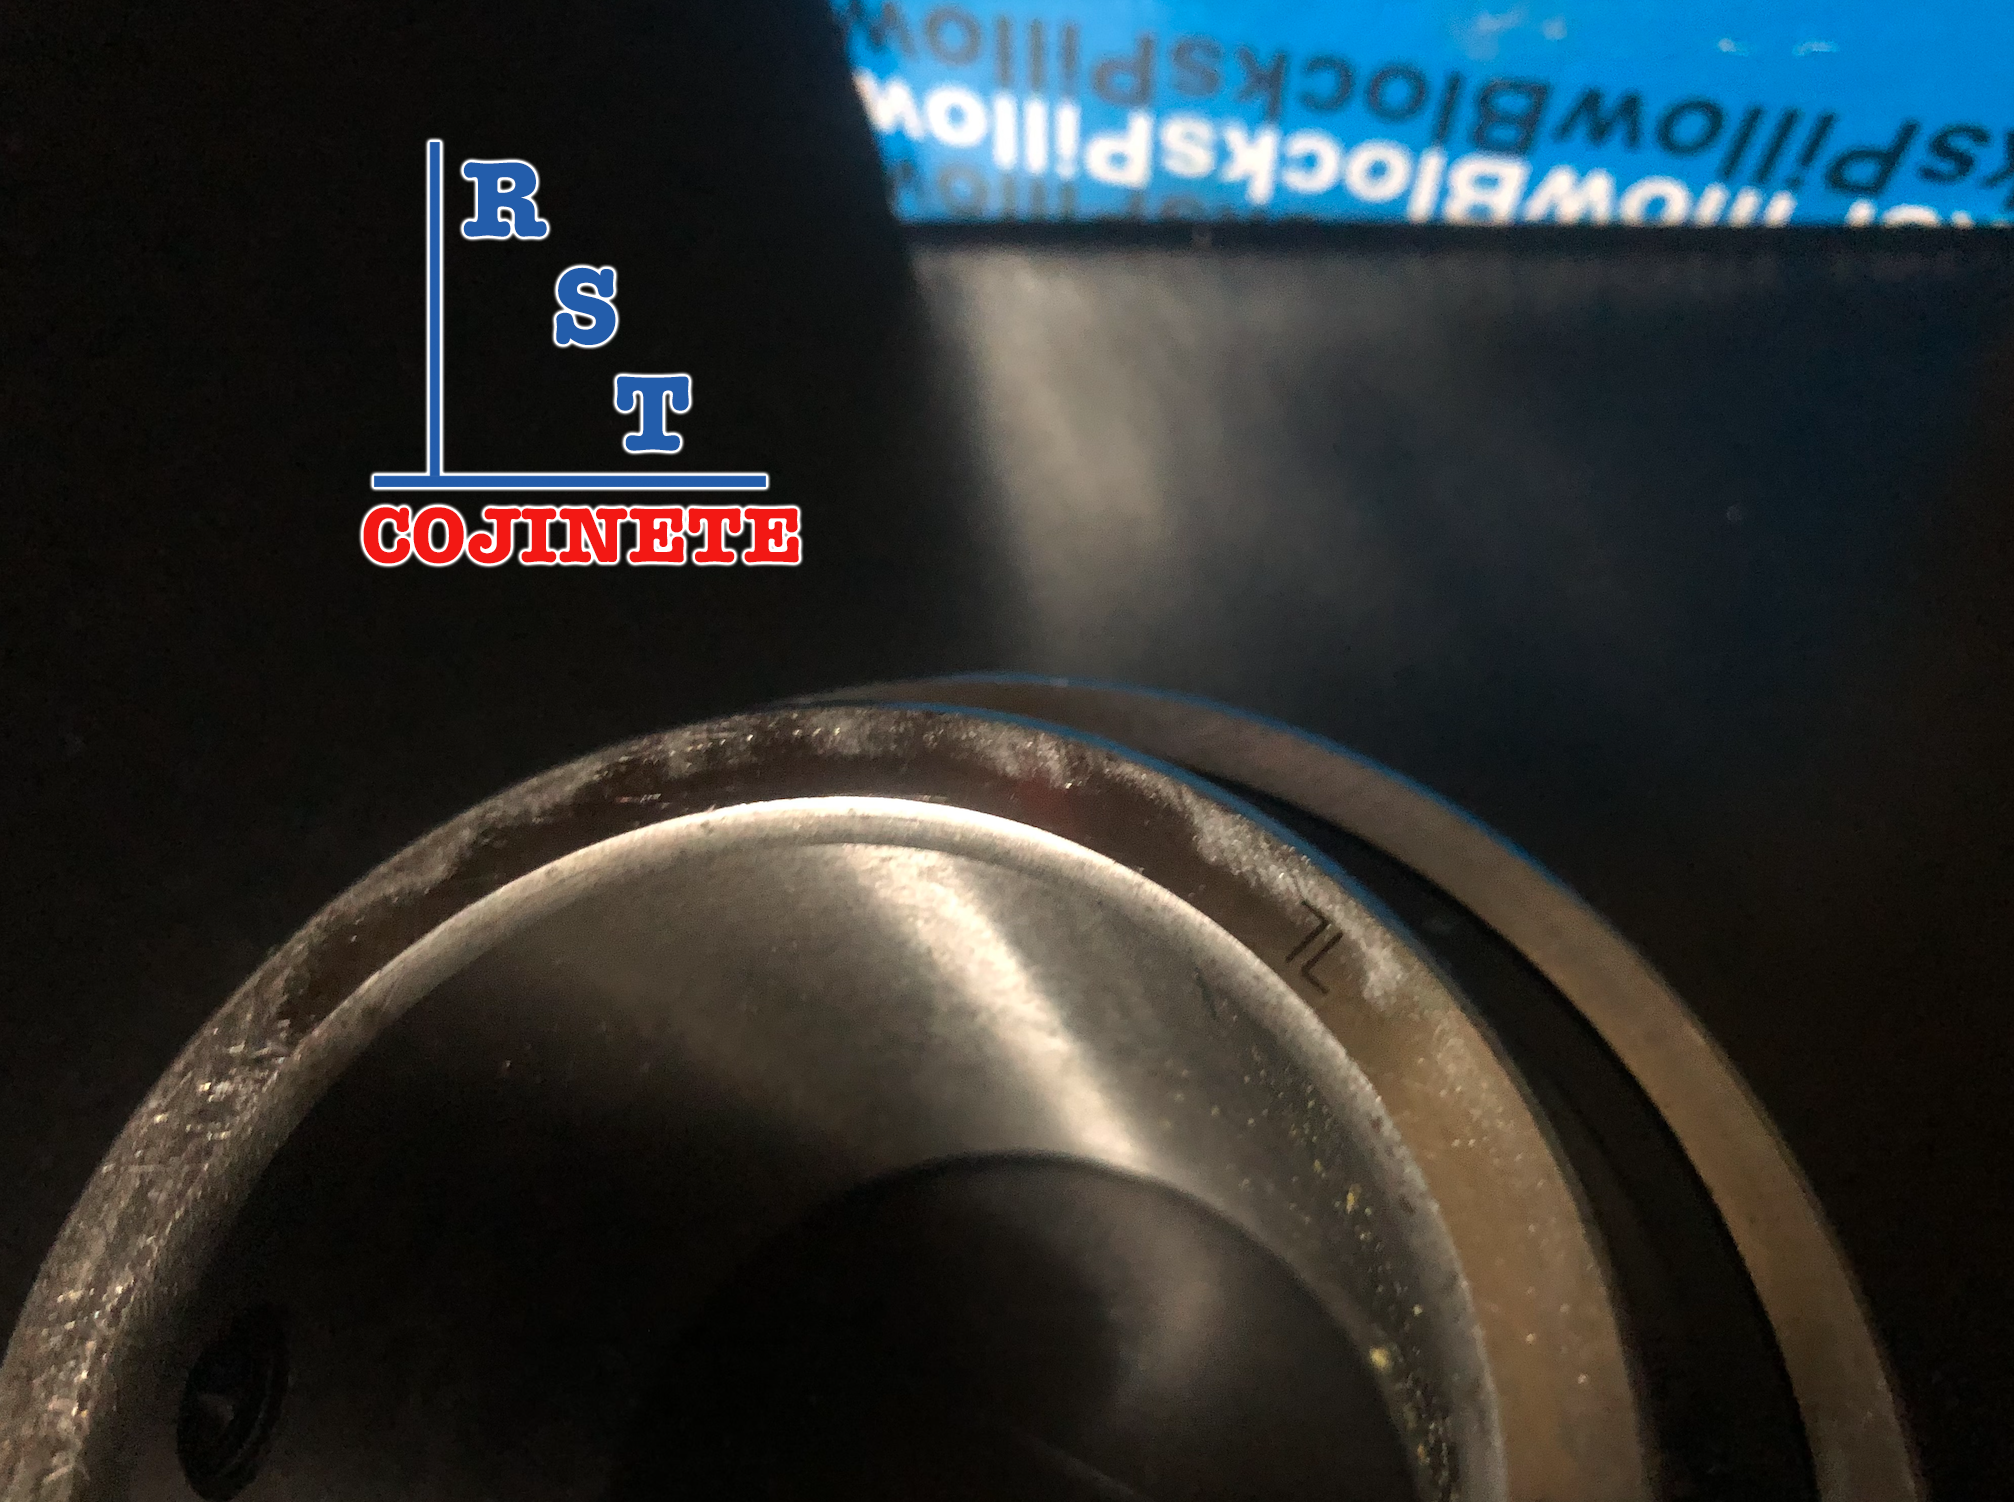 Cojinete insertable UC210-30 | Rodamiento para eje de 1-⅞" rígido de bolas con sello de hule para chumacera